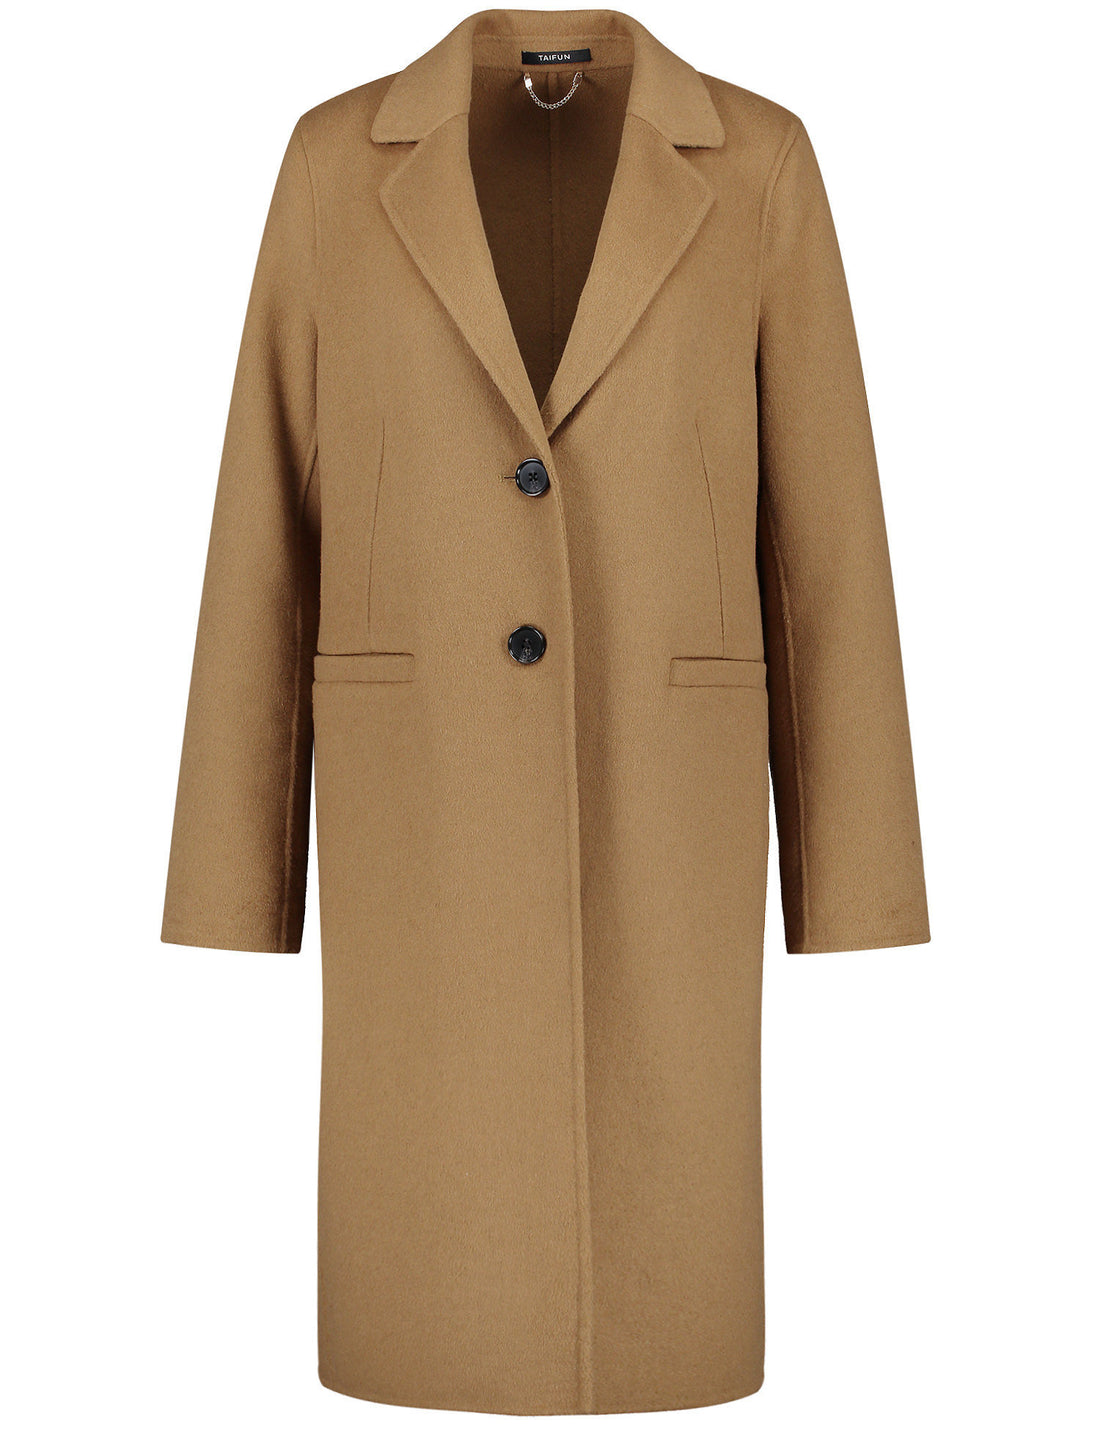 Short Coat In A Wool Blend_450421-11729_7380_02